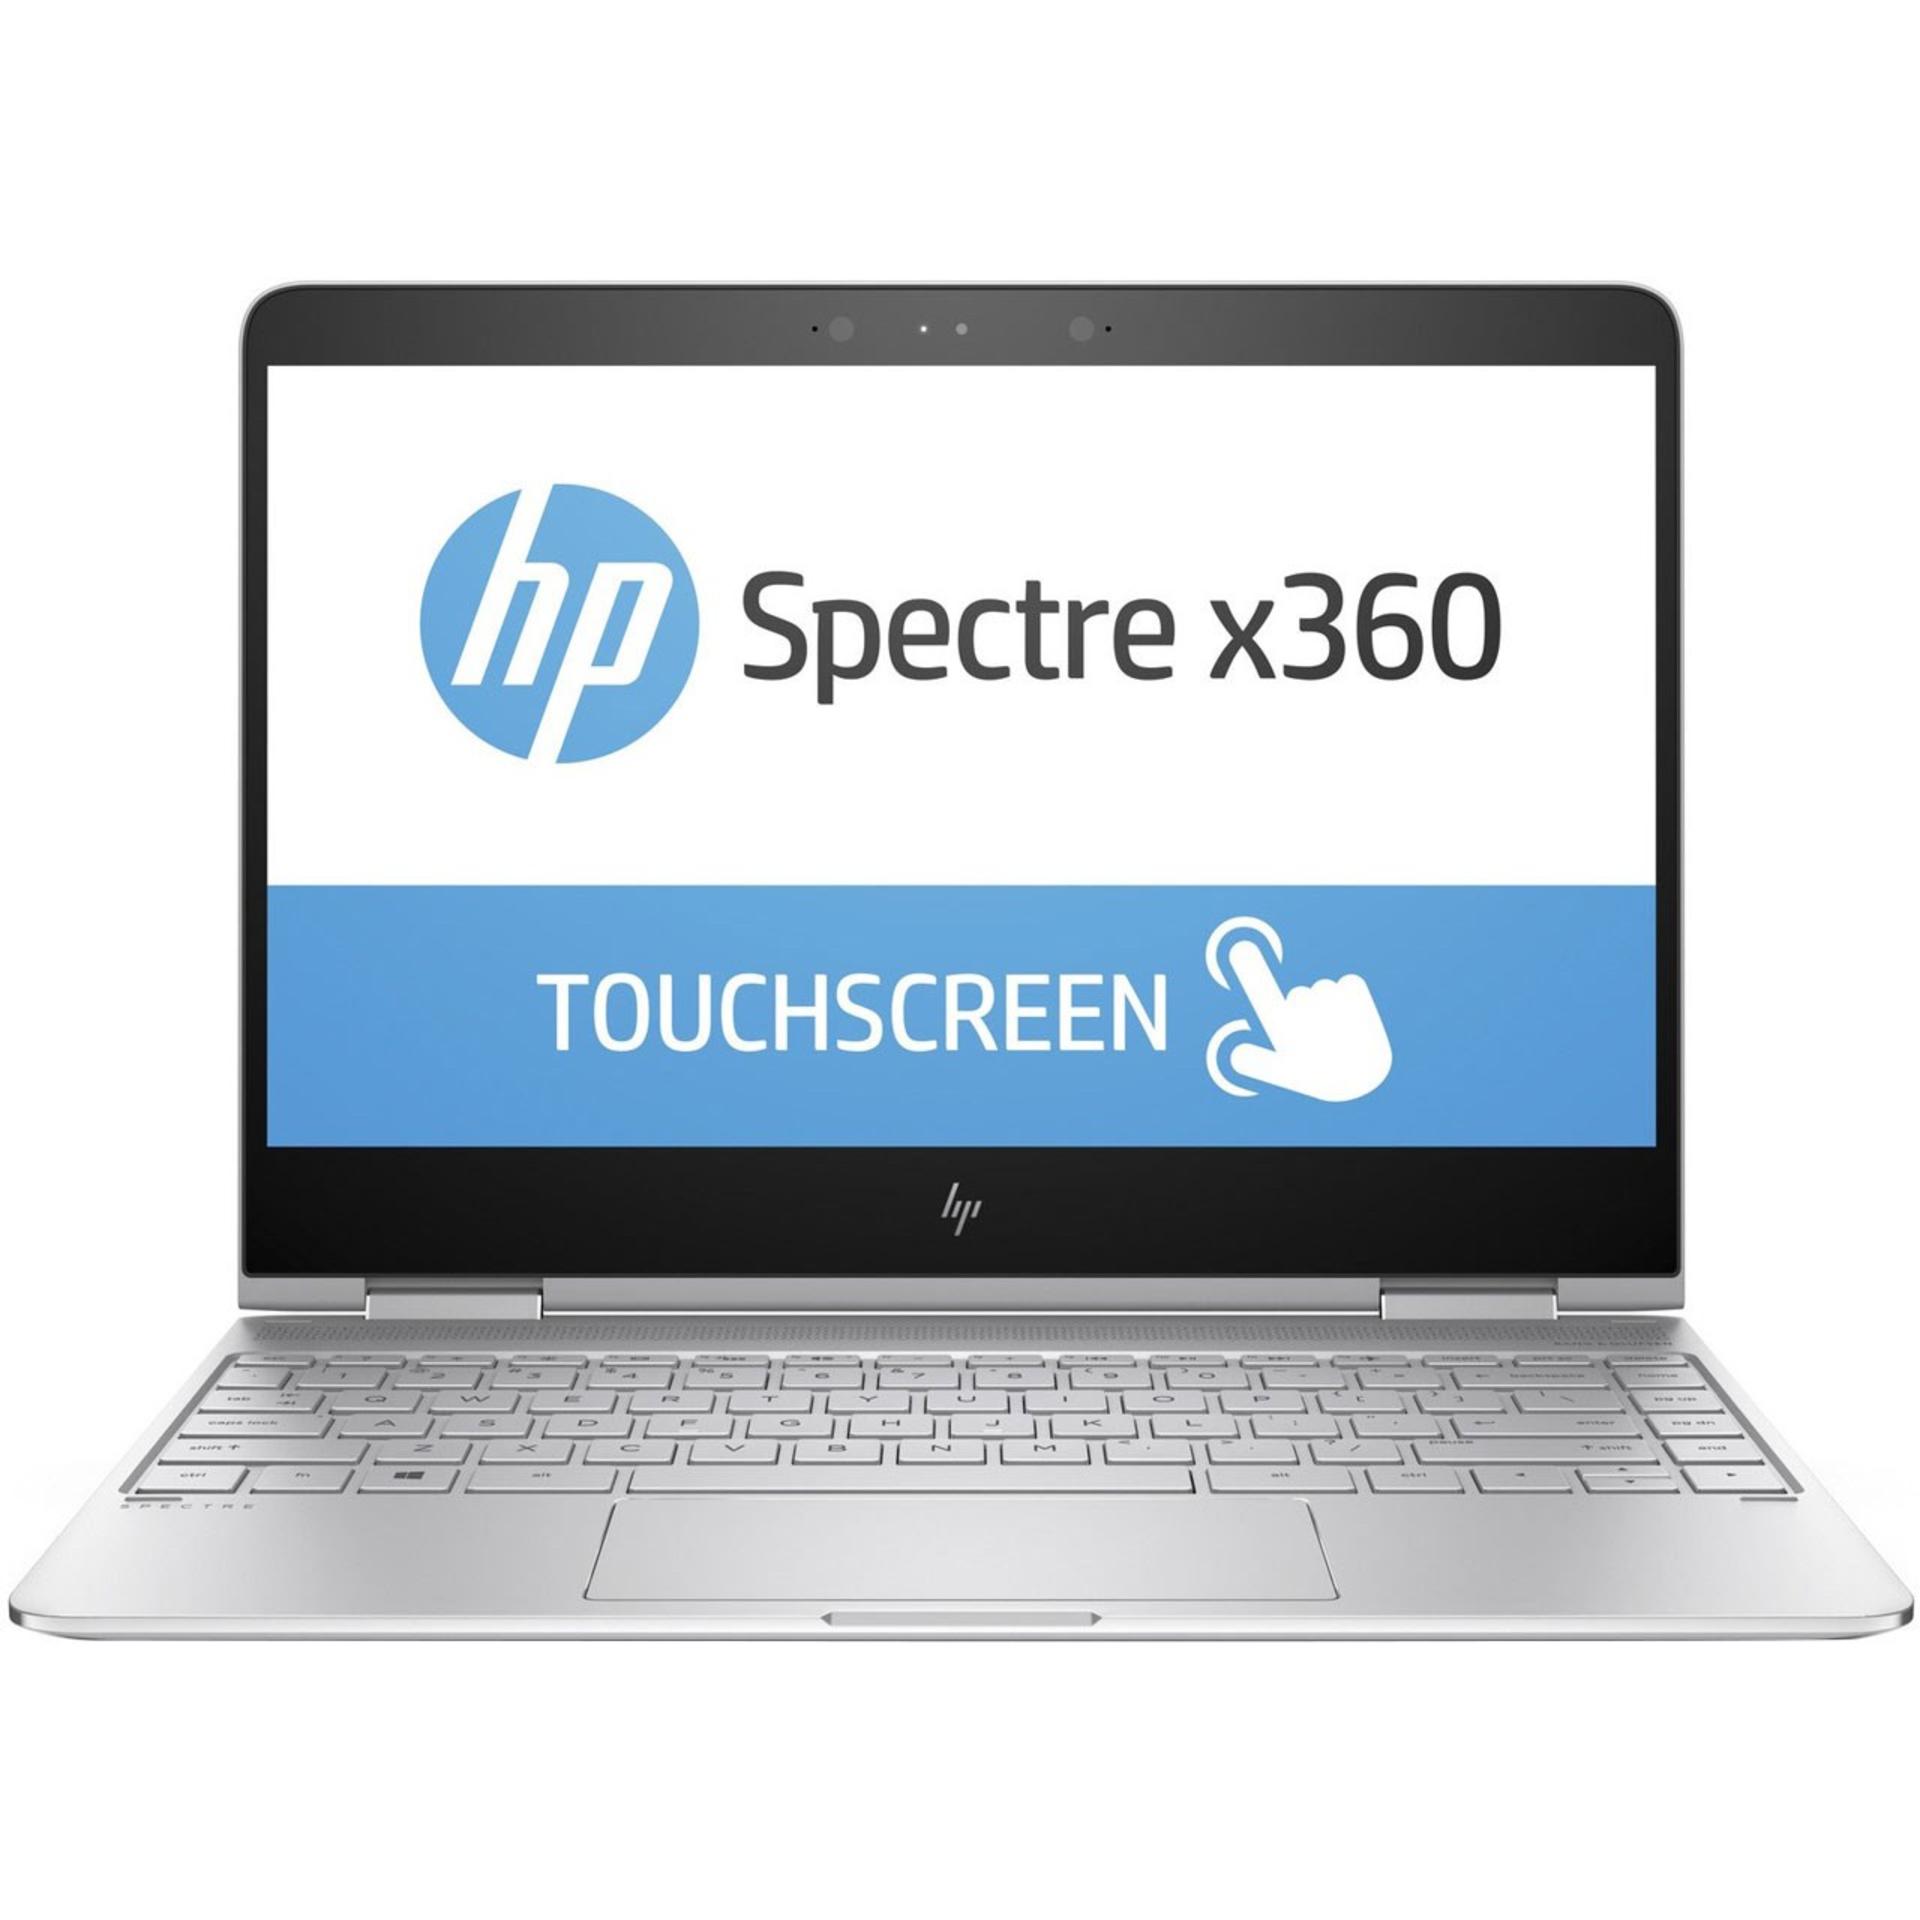 HP SPECTRE X360 13T- 4100